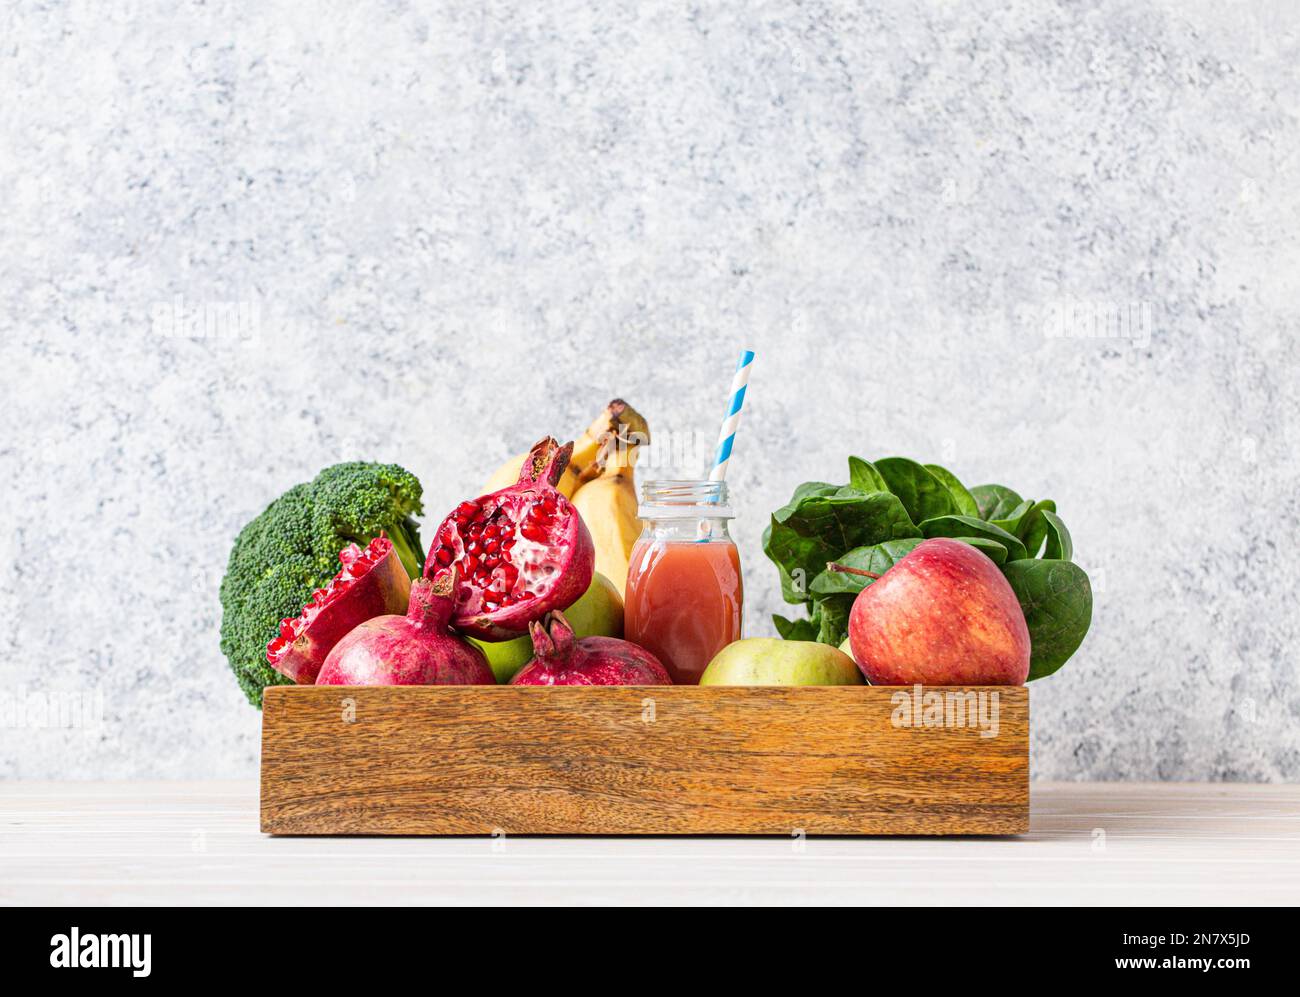 Obst, Gemüse, Gemüse in einer Holzschale und frischer Smoothie oder Saft in der Flasche mit Papierstroh auf dem Tisch nahe der weißen Wand, Entgiftung, Diät, sauberes Essen Stockfoto